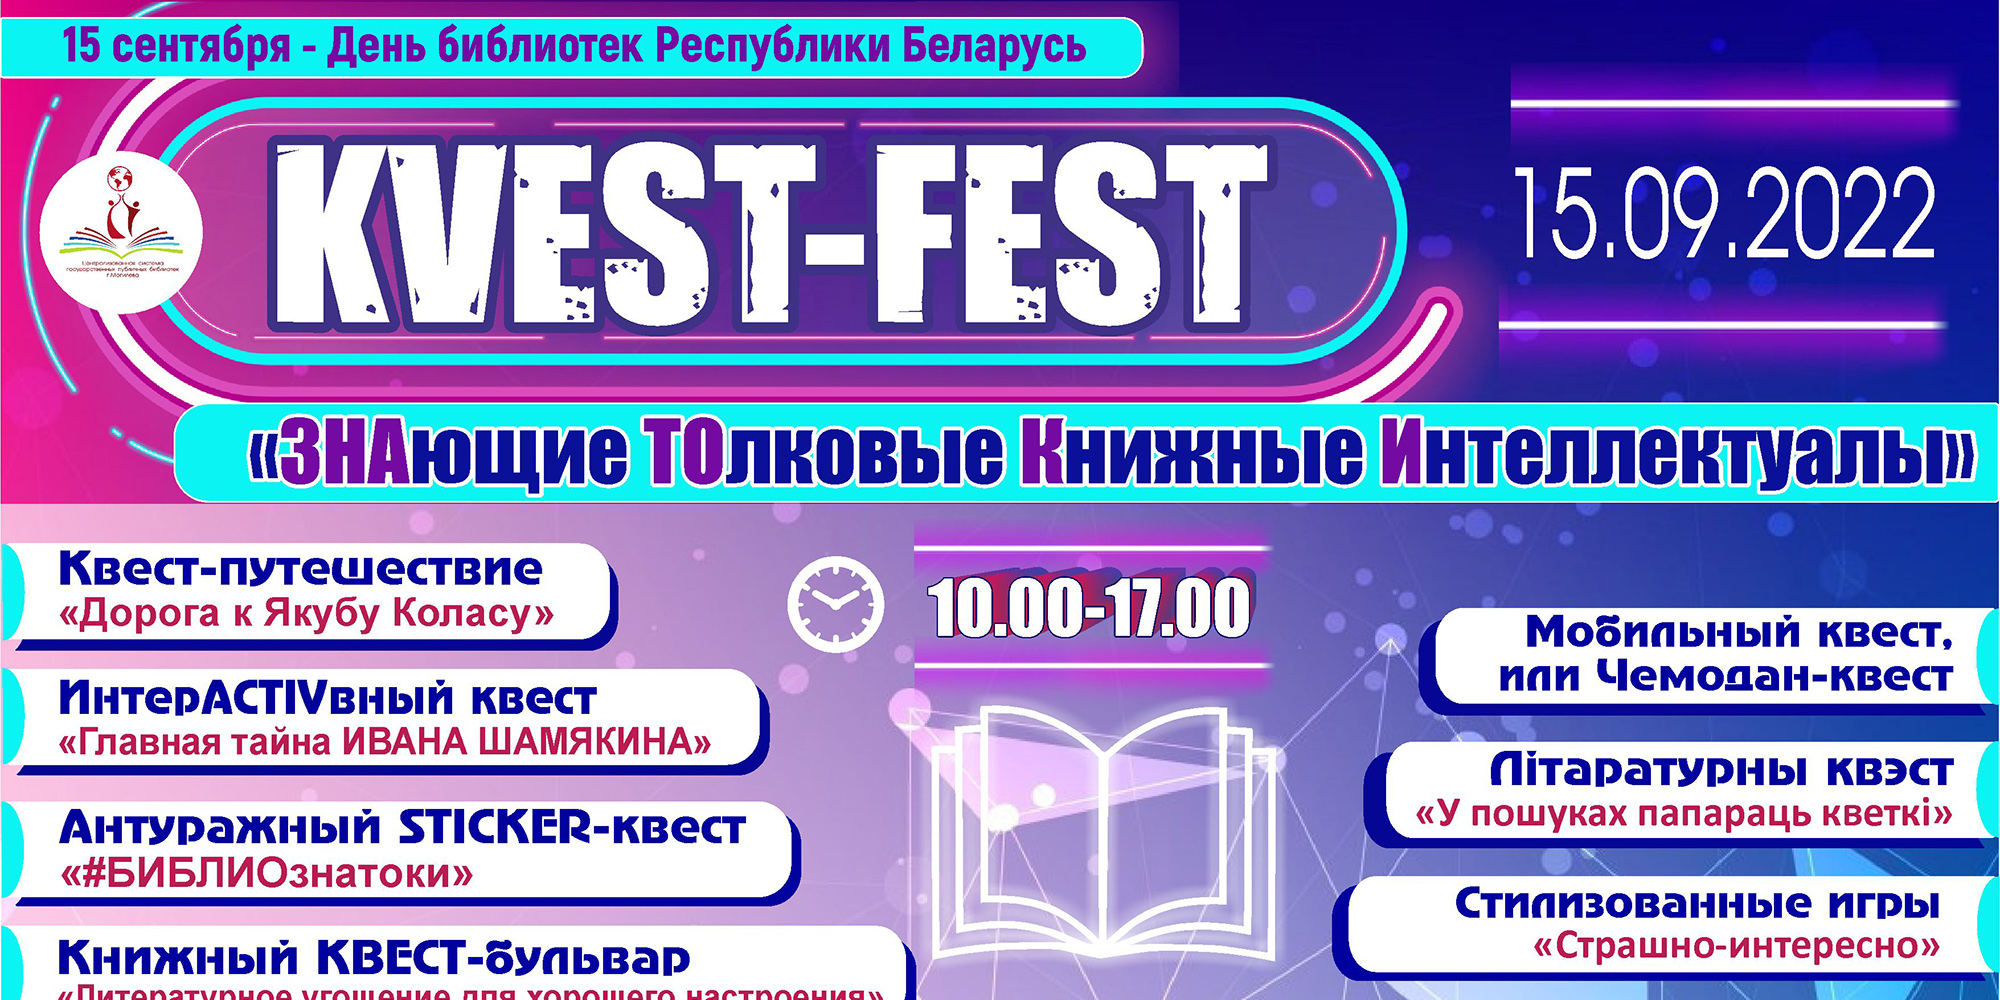 Фестиваль квестов и игр: как будут праздновать День библиотек в Могилеве